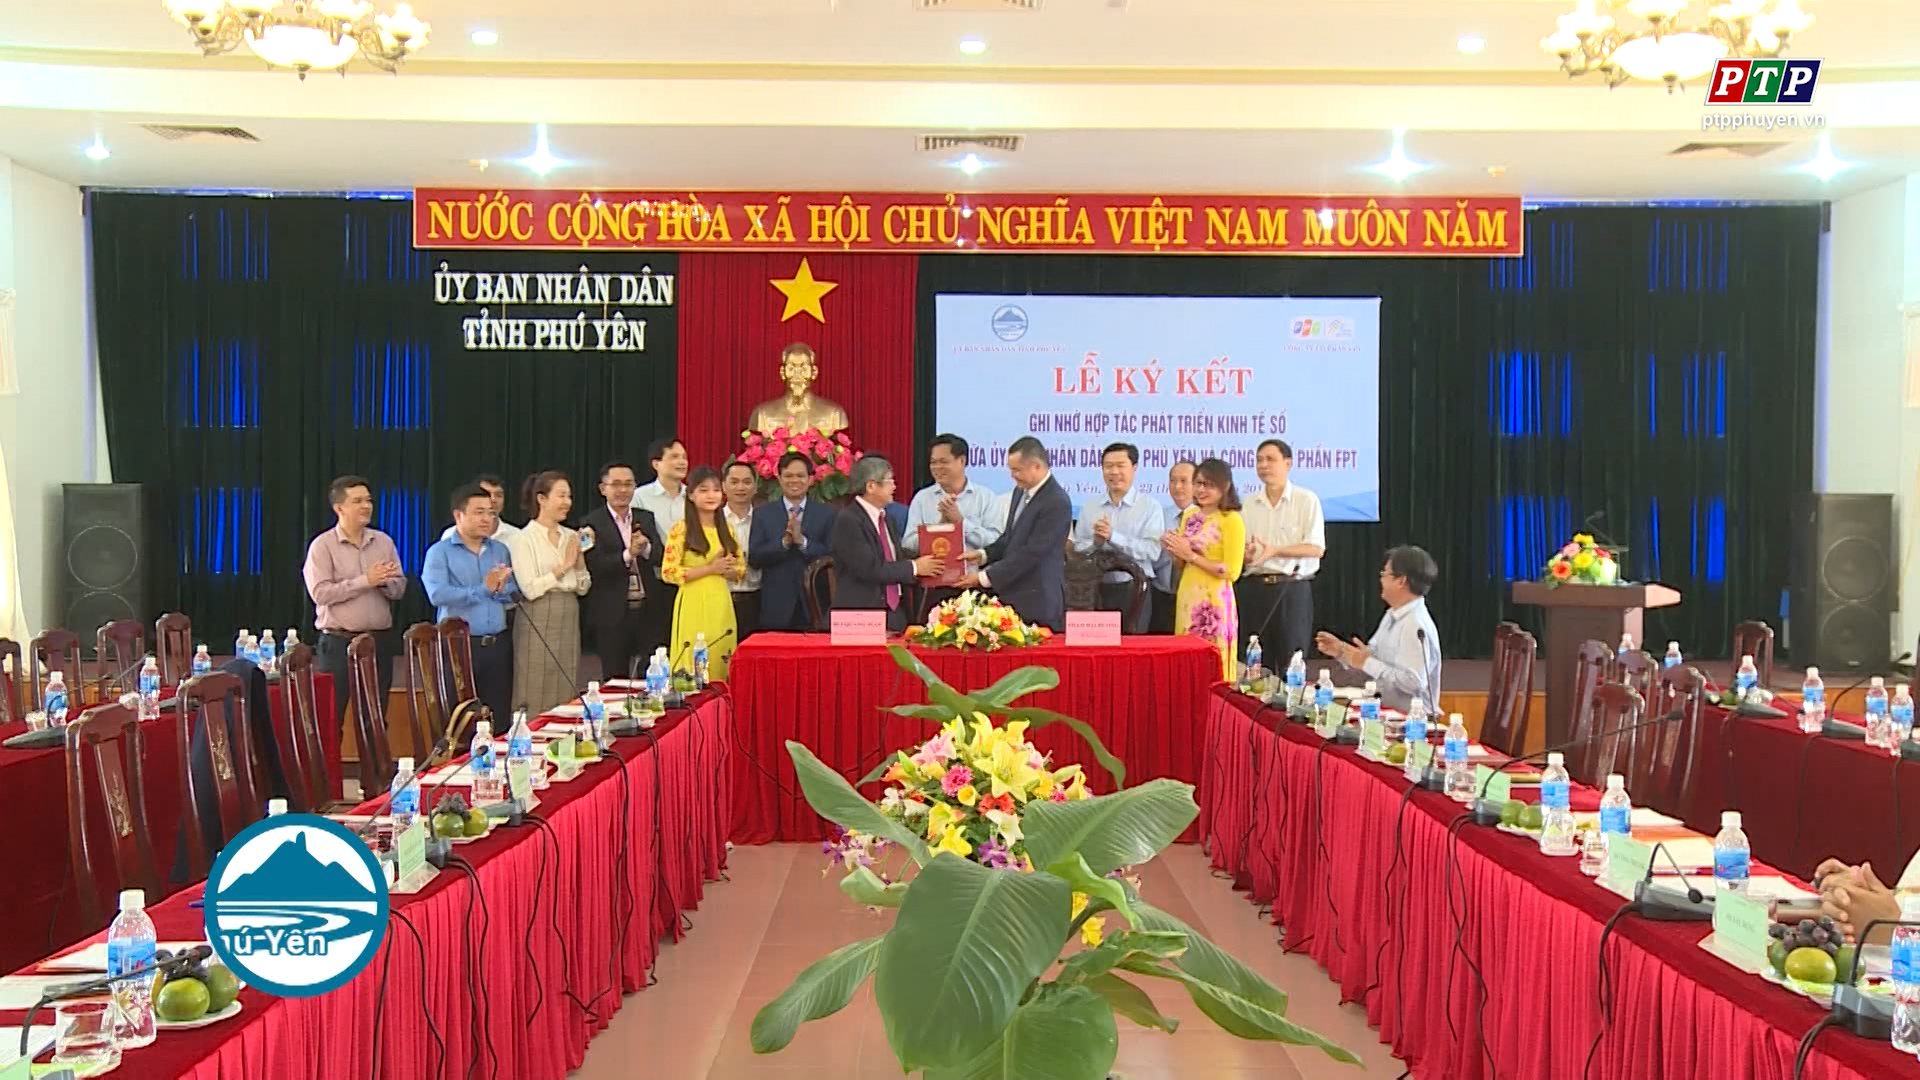 Thỏa thuận hợp tác phát triển kinh tế số giữa UBND tỉnh Phú Yên và Công ty cổ phần FPT